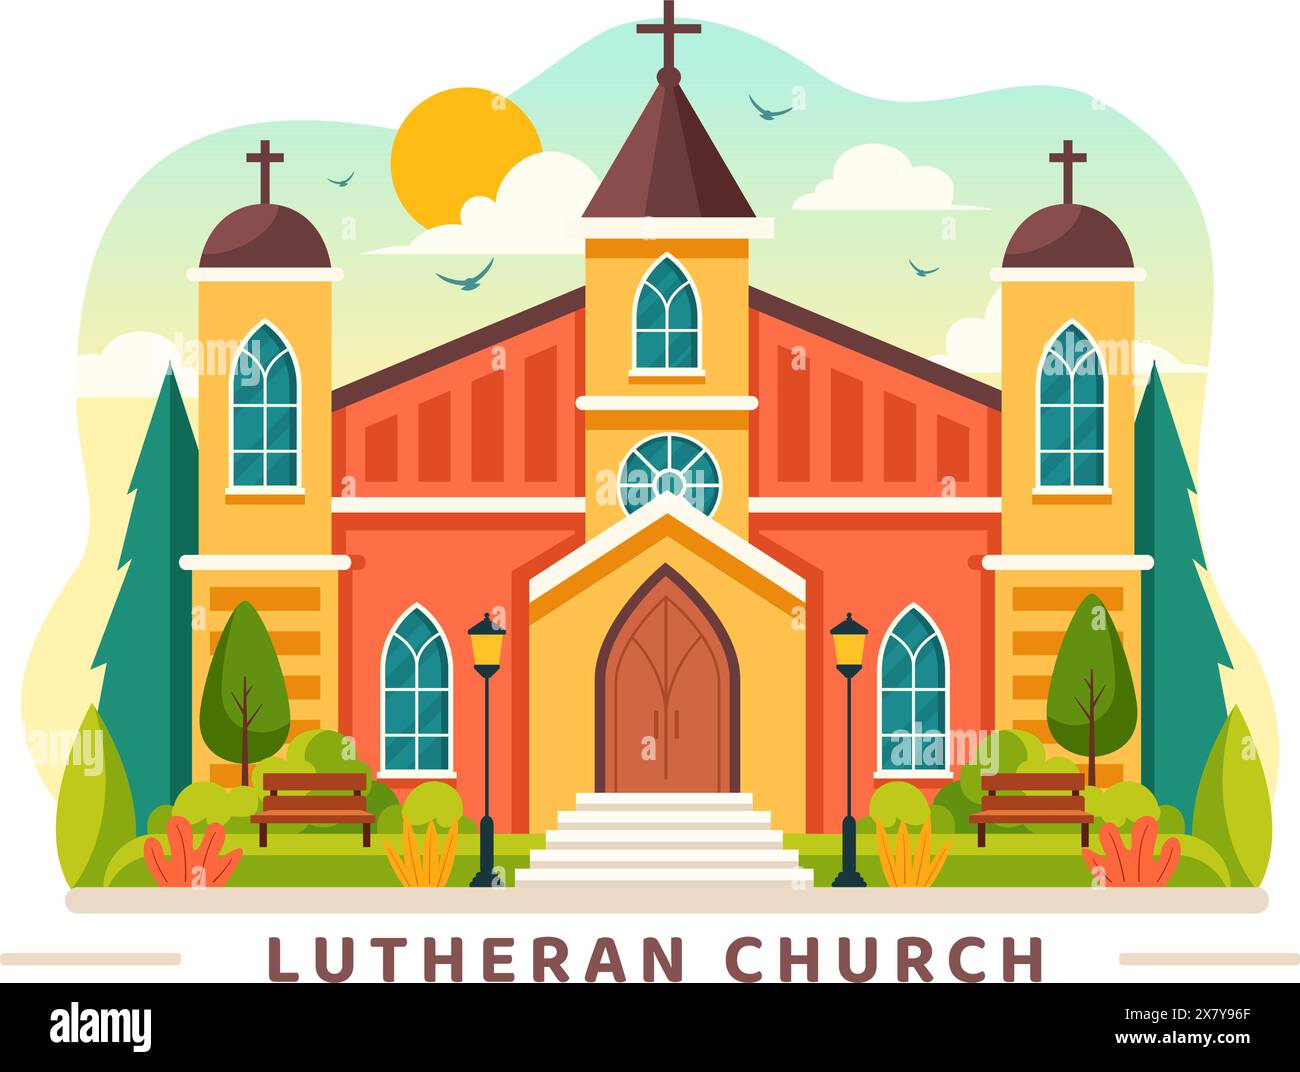 Lutherische Kirche Vektor-Illustration mit einem Dom Tempel Gebäude und christliche religiöse Architektur in einem flachen Cartoon Stil Hintergrund Stock Vektor